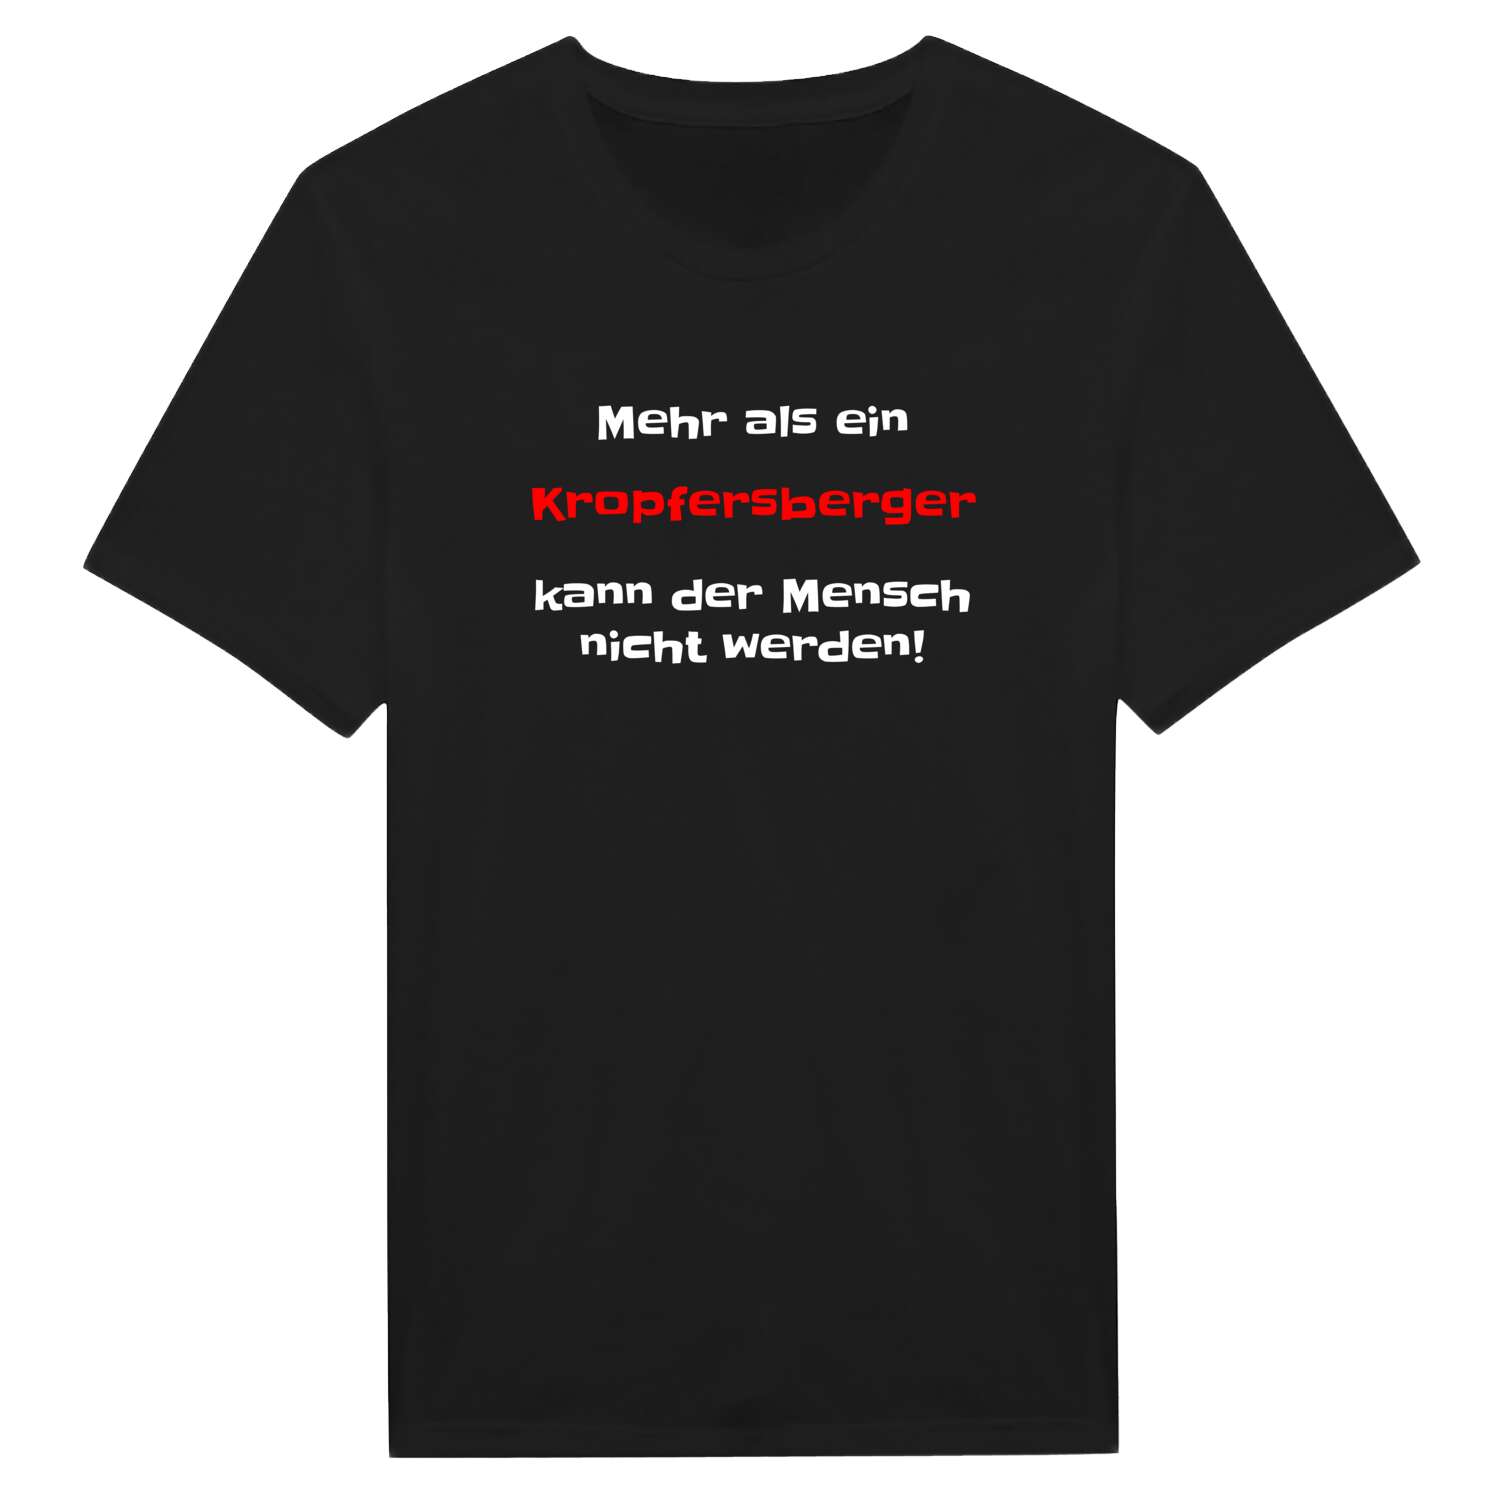 Kropfersberg T-Shirt »Mehr als ein«